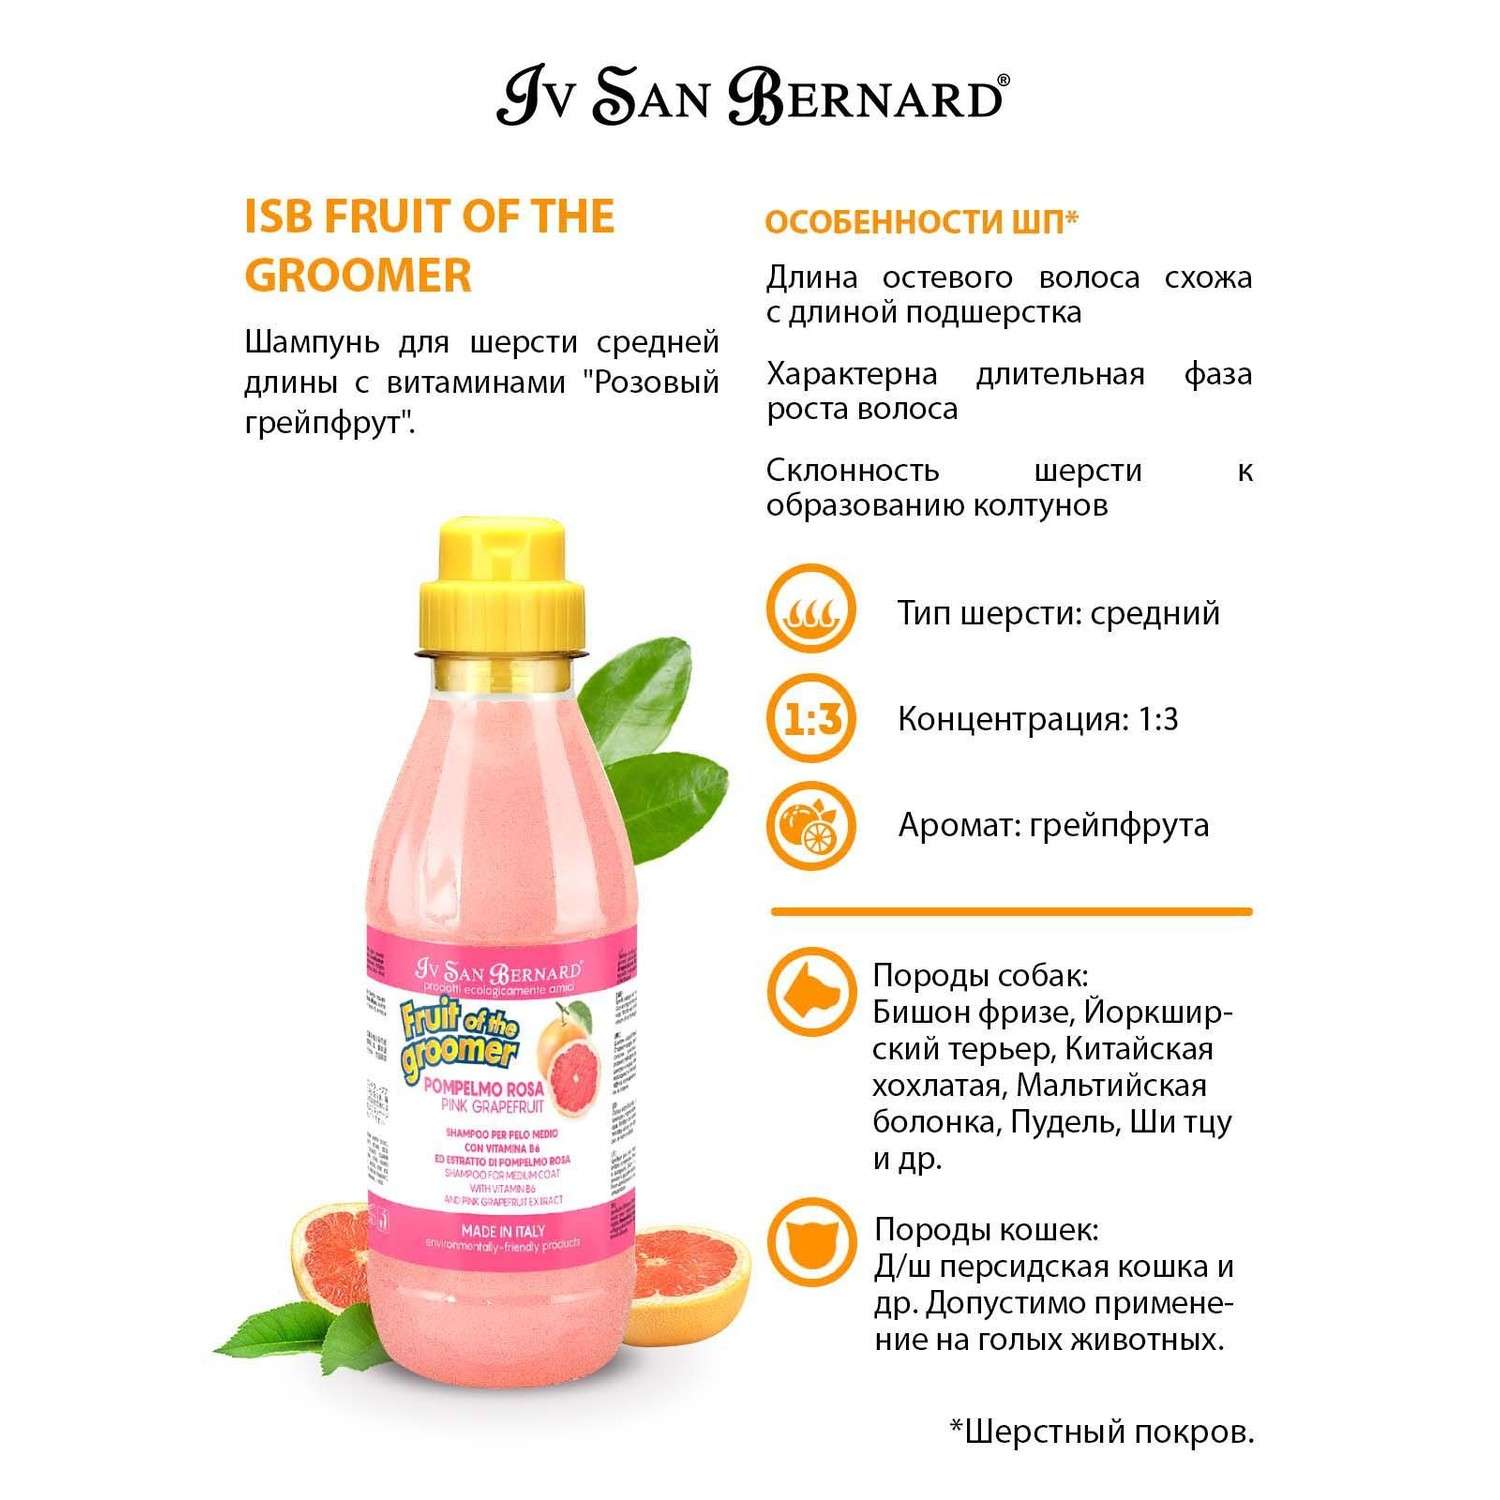 Шампунь для кошек и собак Iv San Bernard Fruit of the Groomer Pink Grapefruit для шерсти средней длины с витаминами 500мл - фото 3